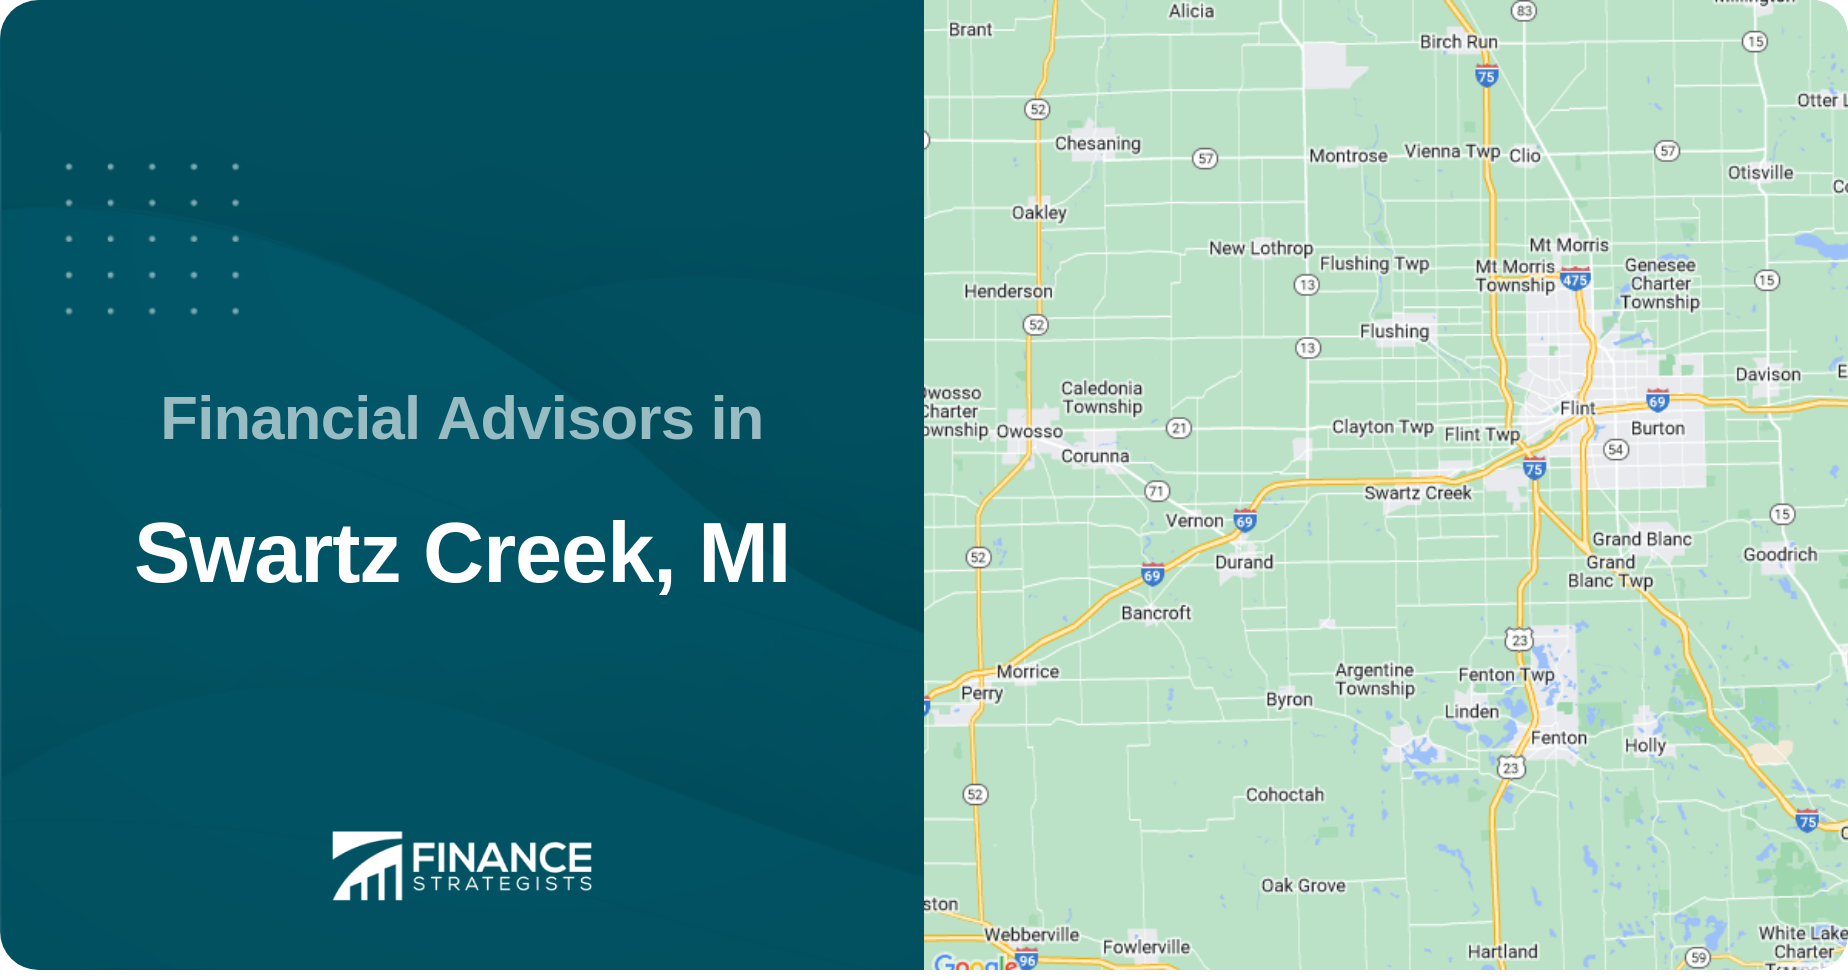 Financial Advisors in Swartz Creek, MI